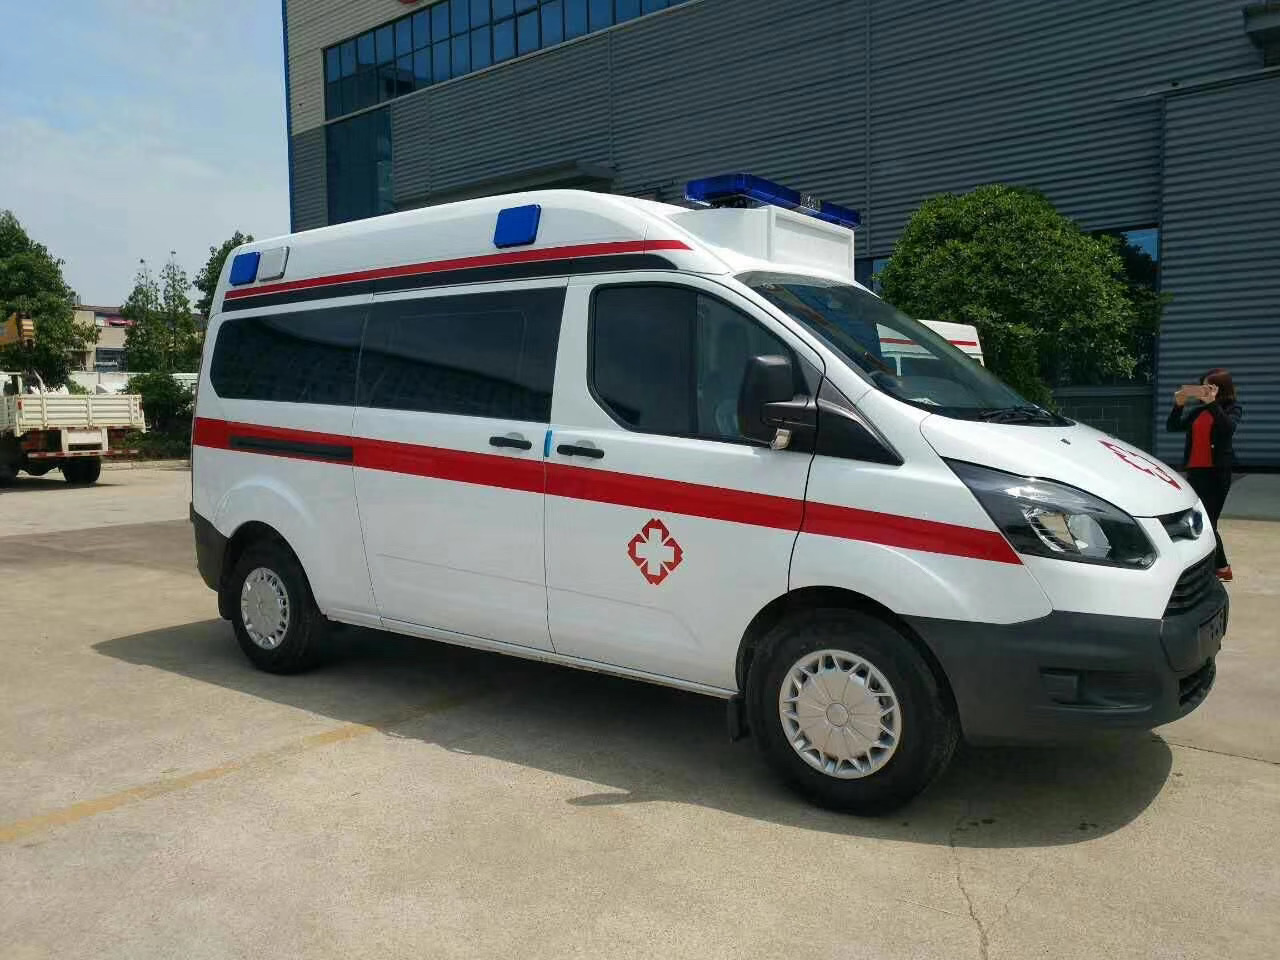 靖江市出院转院救护车